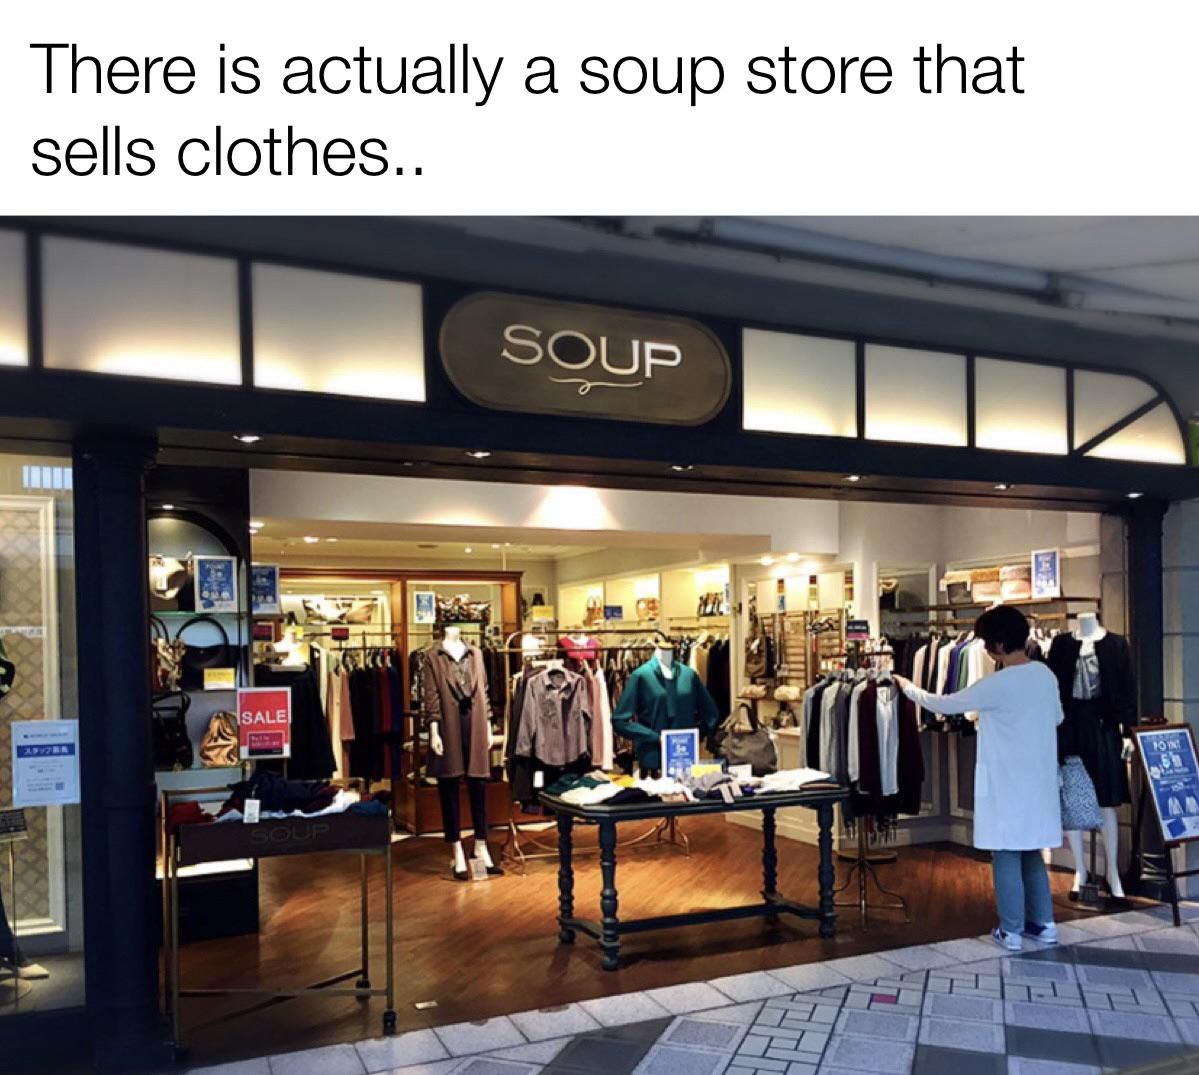 I‘m at soup!